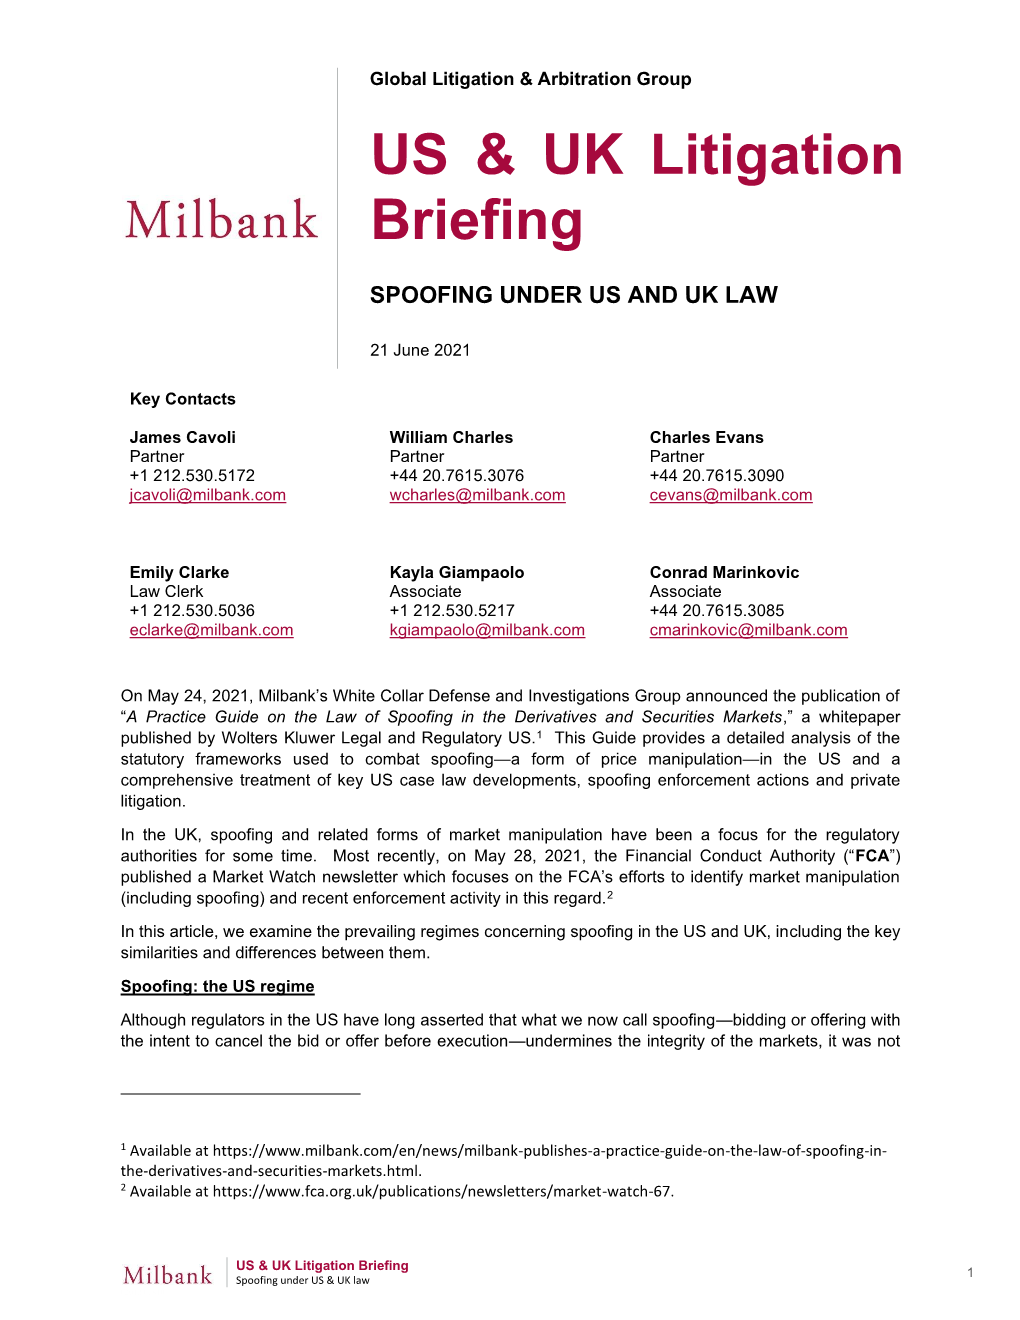 US & UK Litigation Briefing